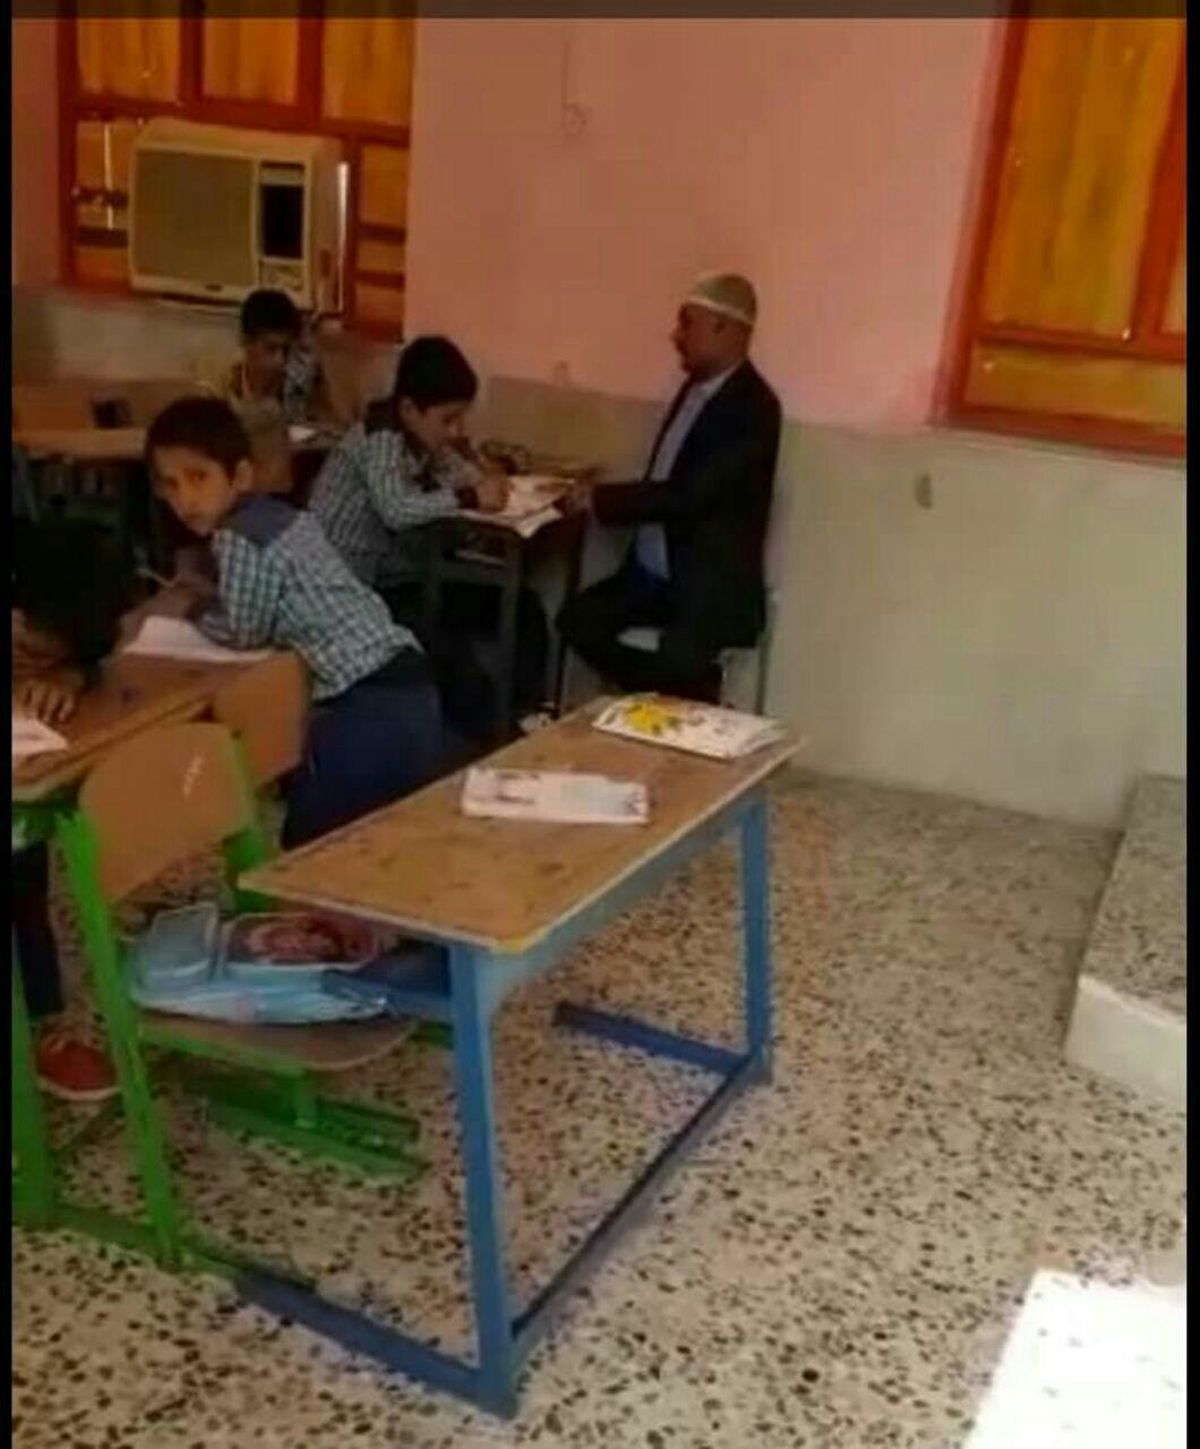 معلم مدرسه ای در بندر سیراف بوشهر 2 روز بعد از جراحی مغز در کلاس درس حاضر شد